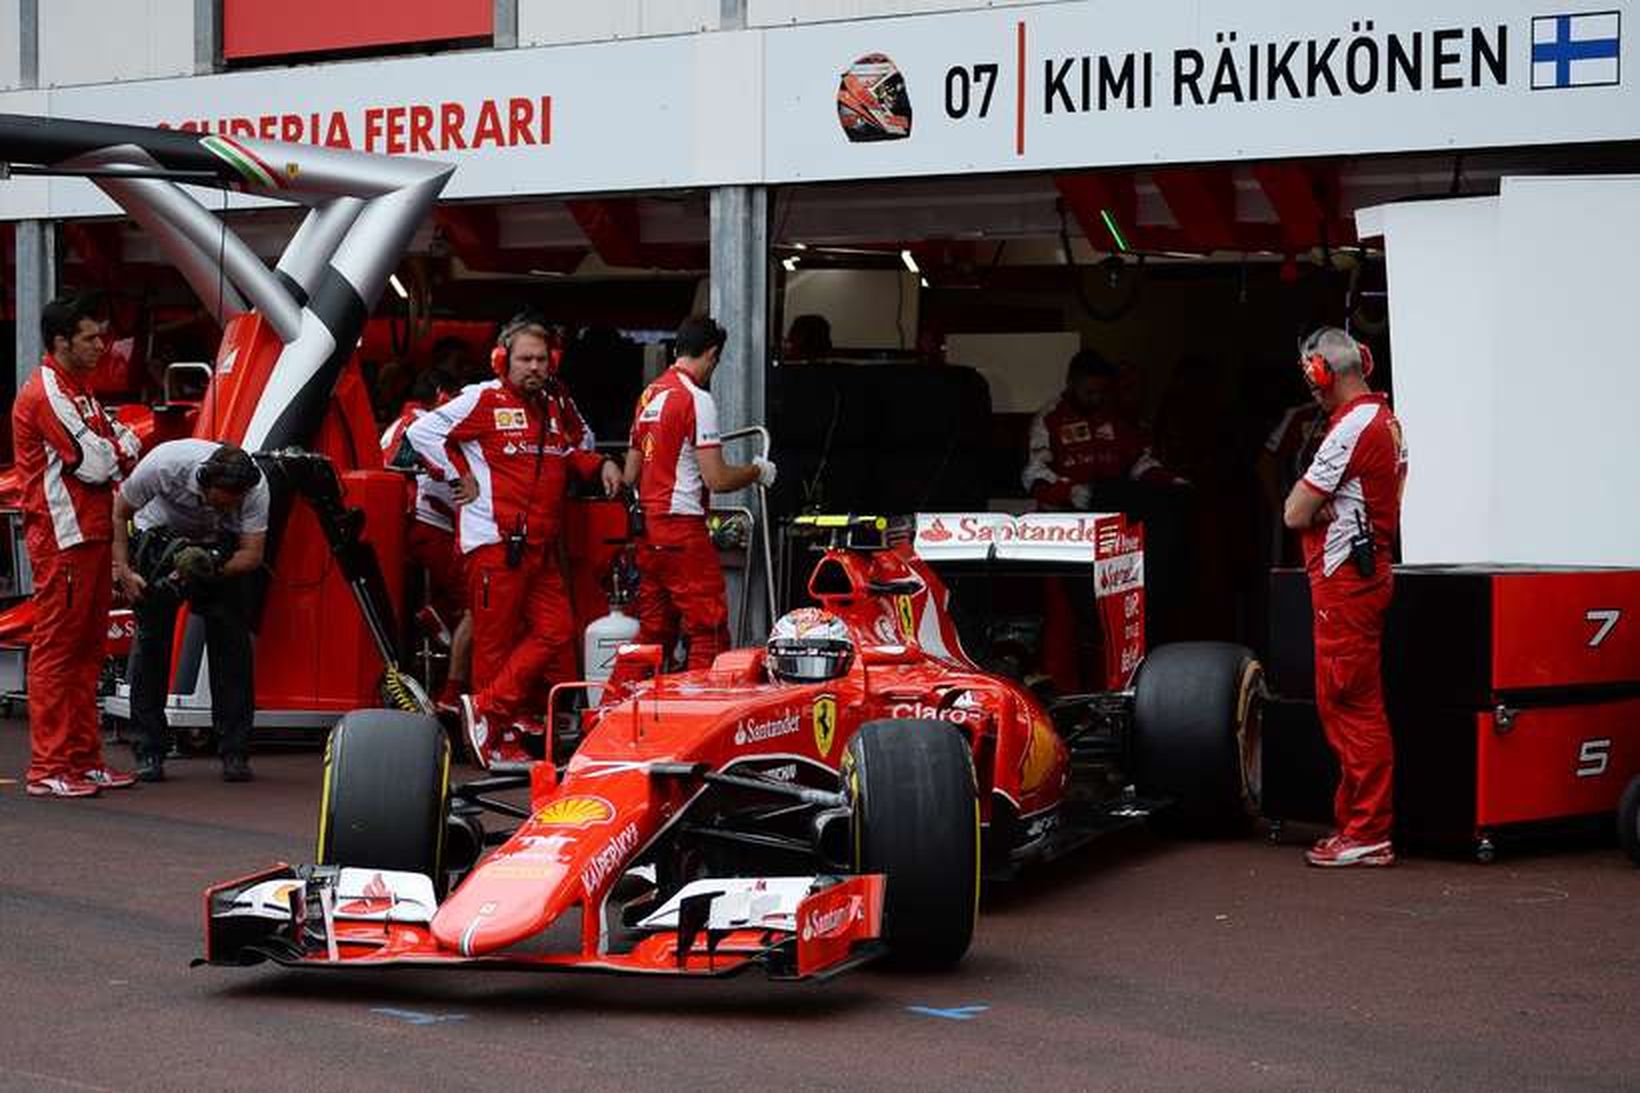 Kimi Räikkönen leggur af stað í tímatilraun í Mónakó í …